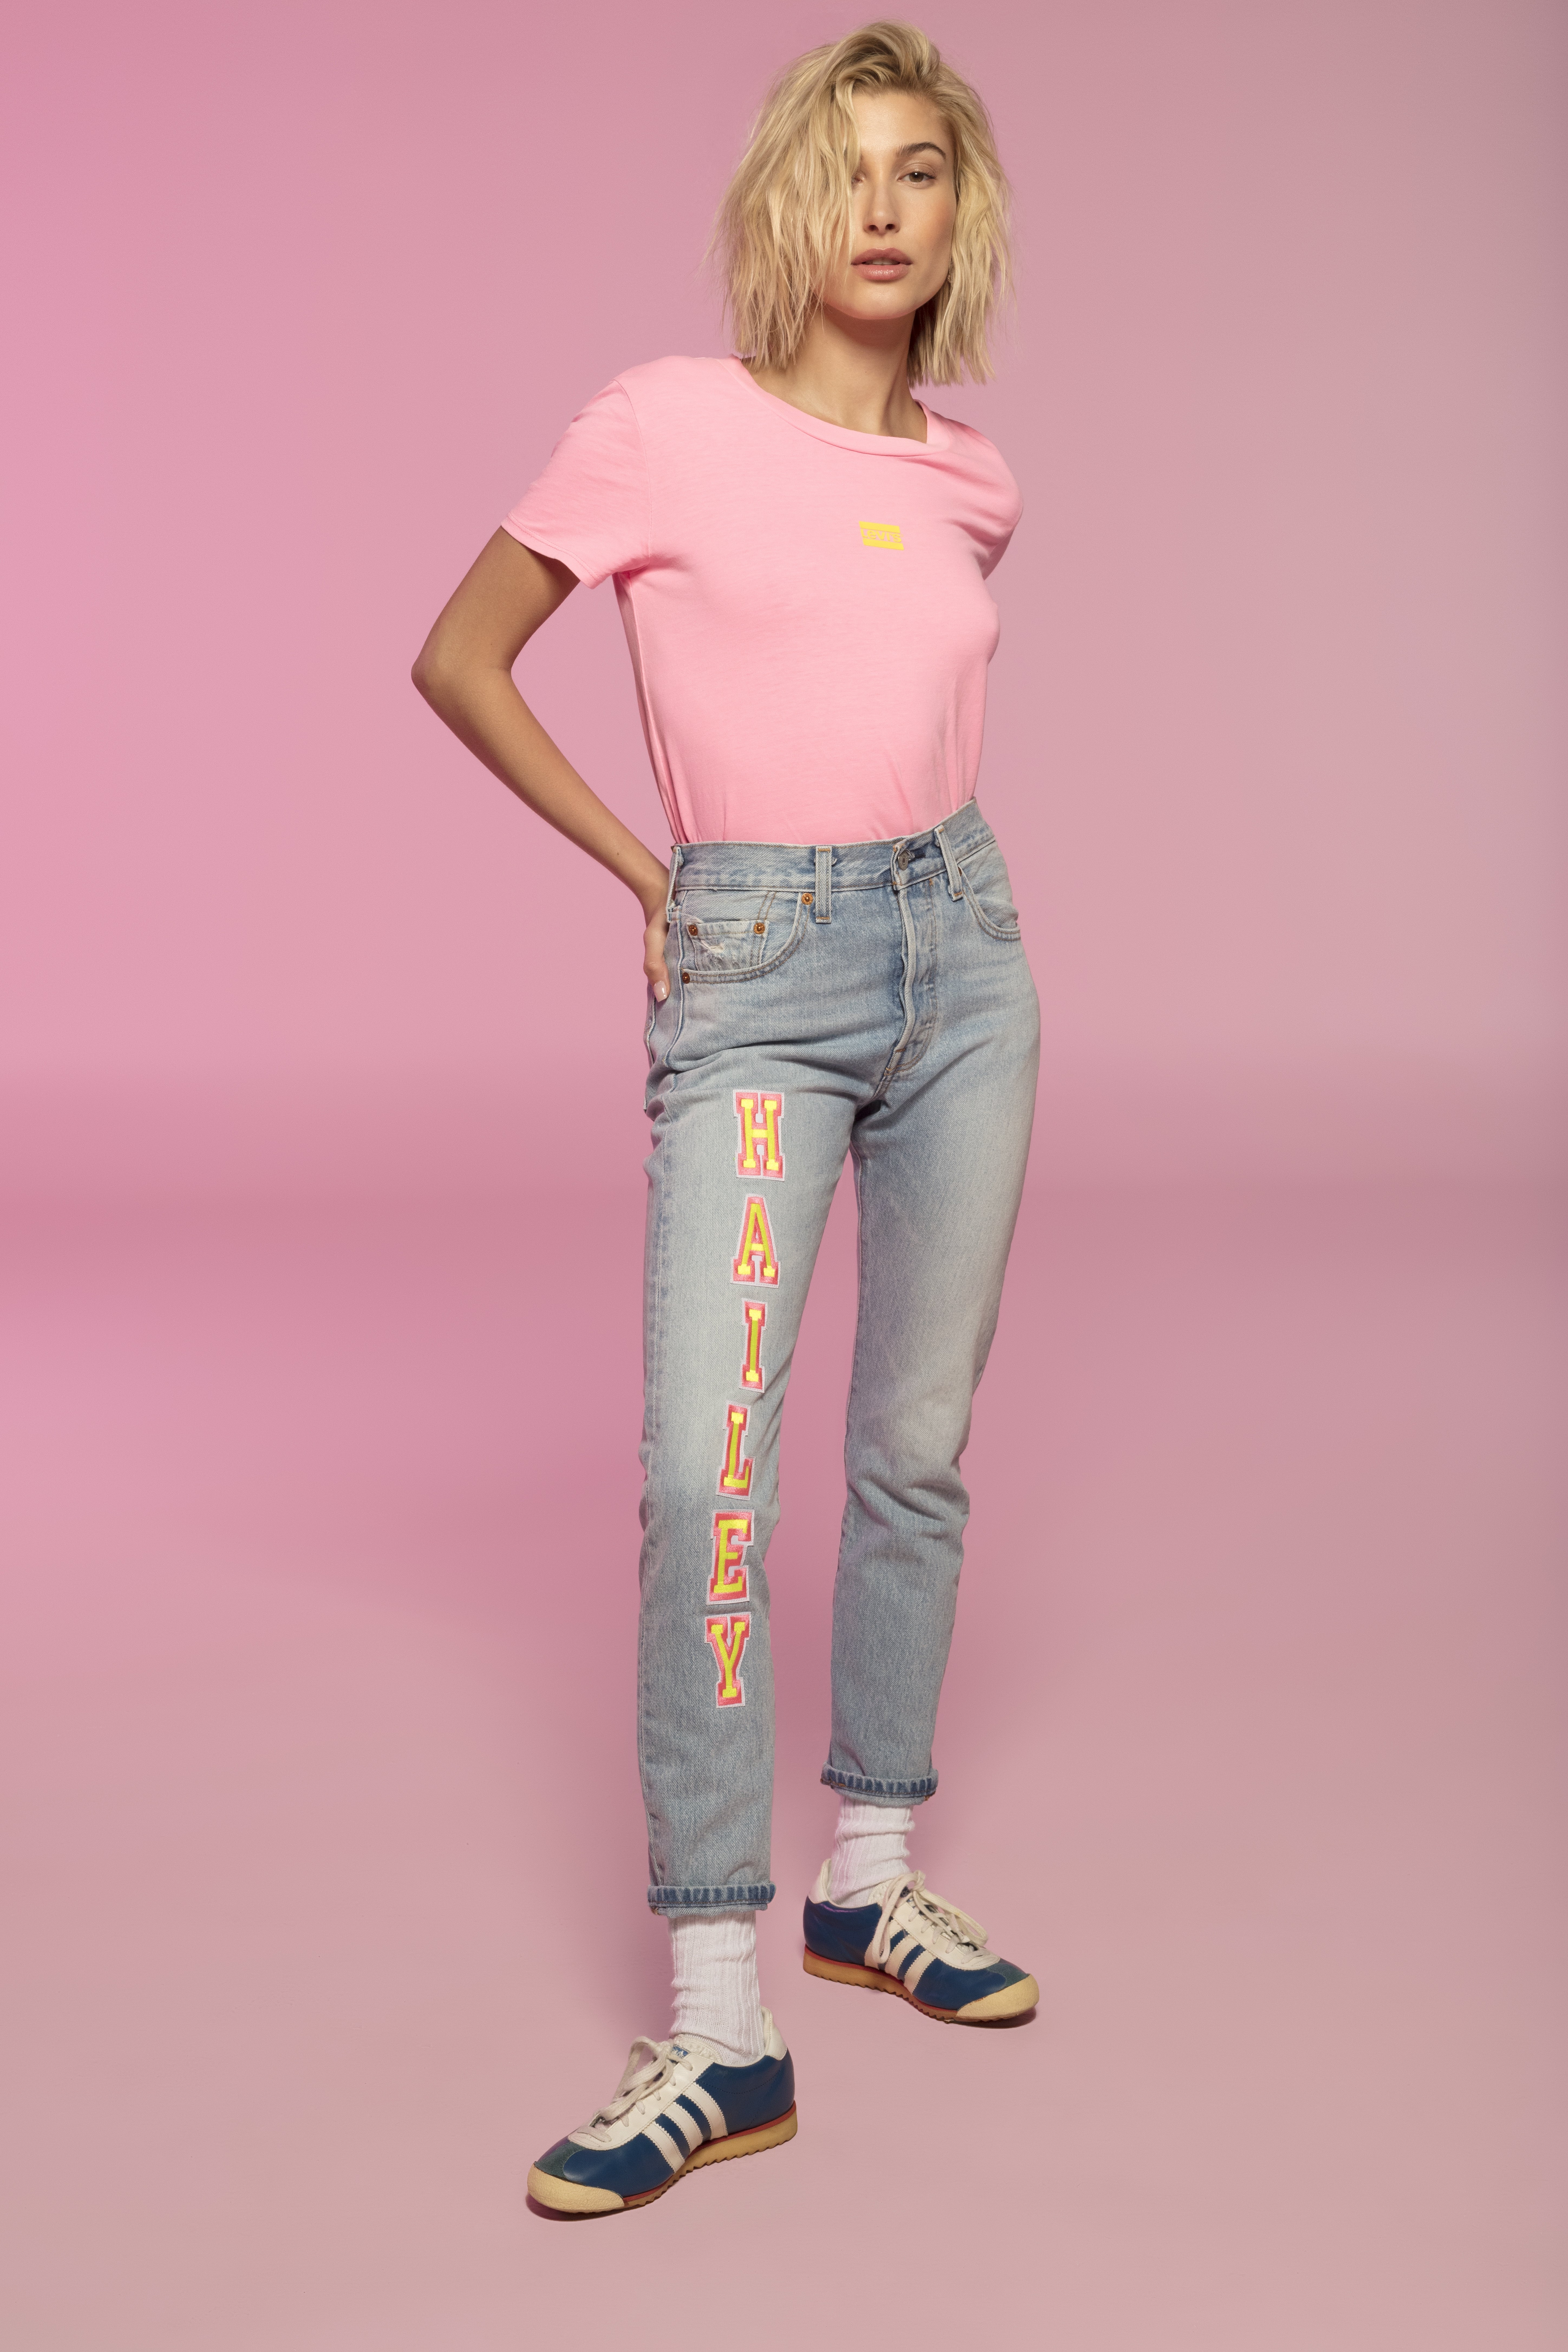 Hailey Baldwin Levi's Jeans Collaboration 2019 POPSUGAR Fashion